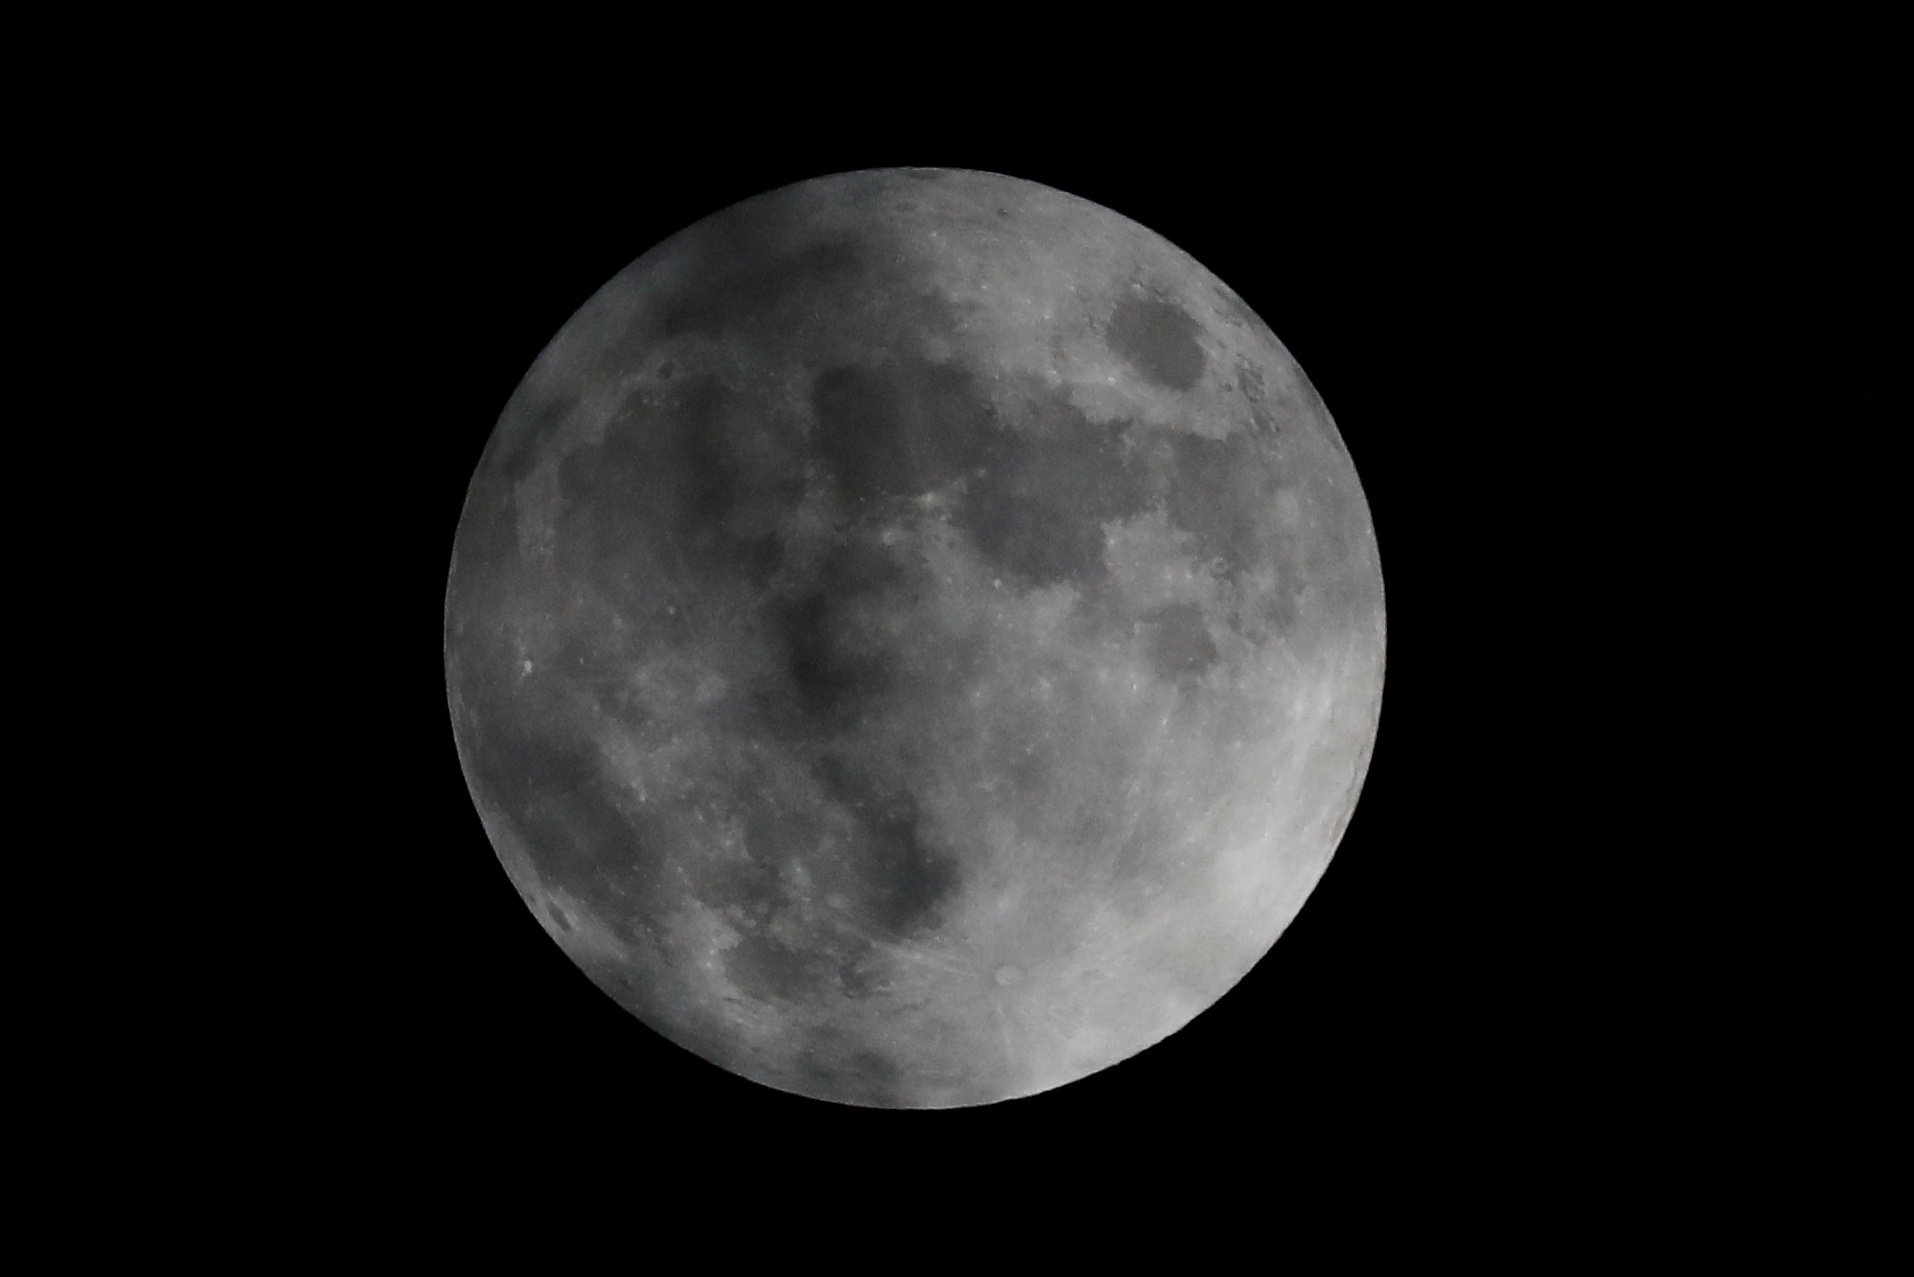 El cuarto y último eclipse de Luna del 2020 ocurrirá en la madrugada del 30 de noviembre (Foto: REUTERS/Carlos Jasso)